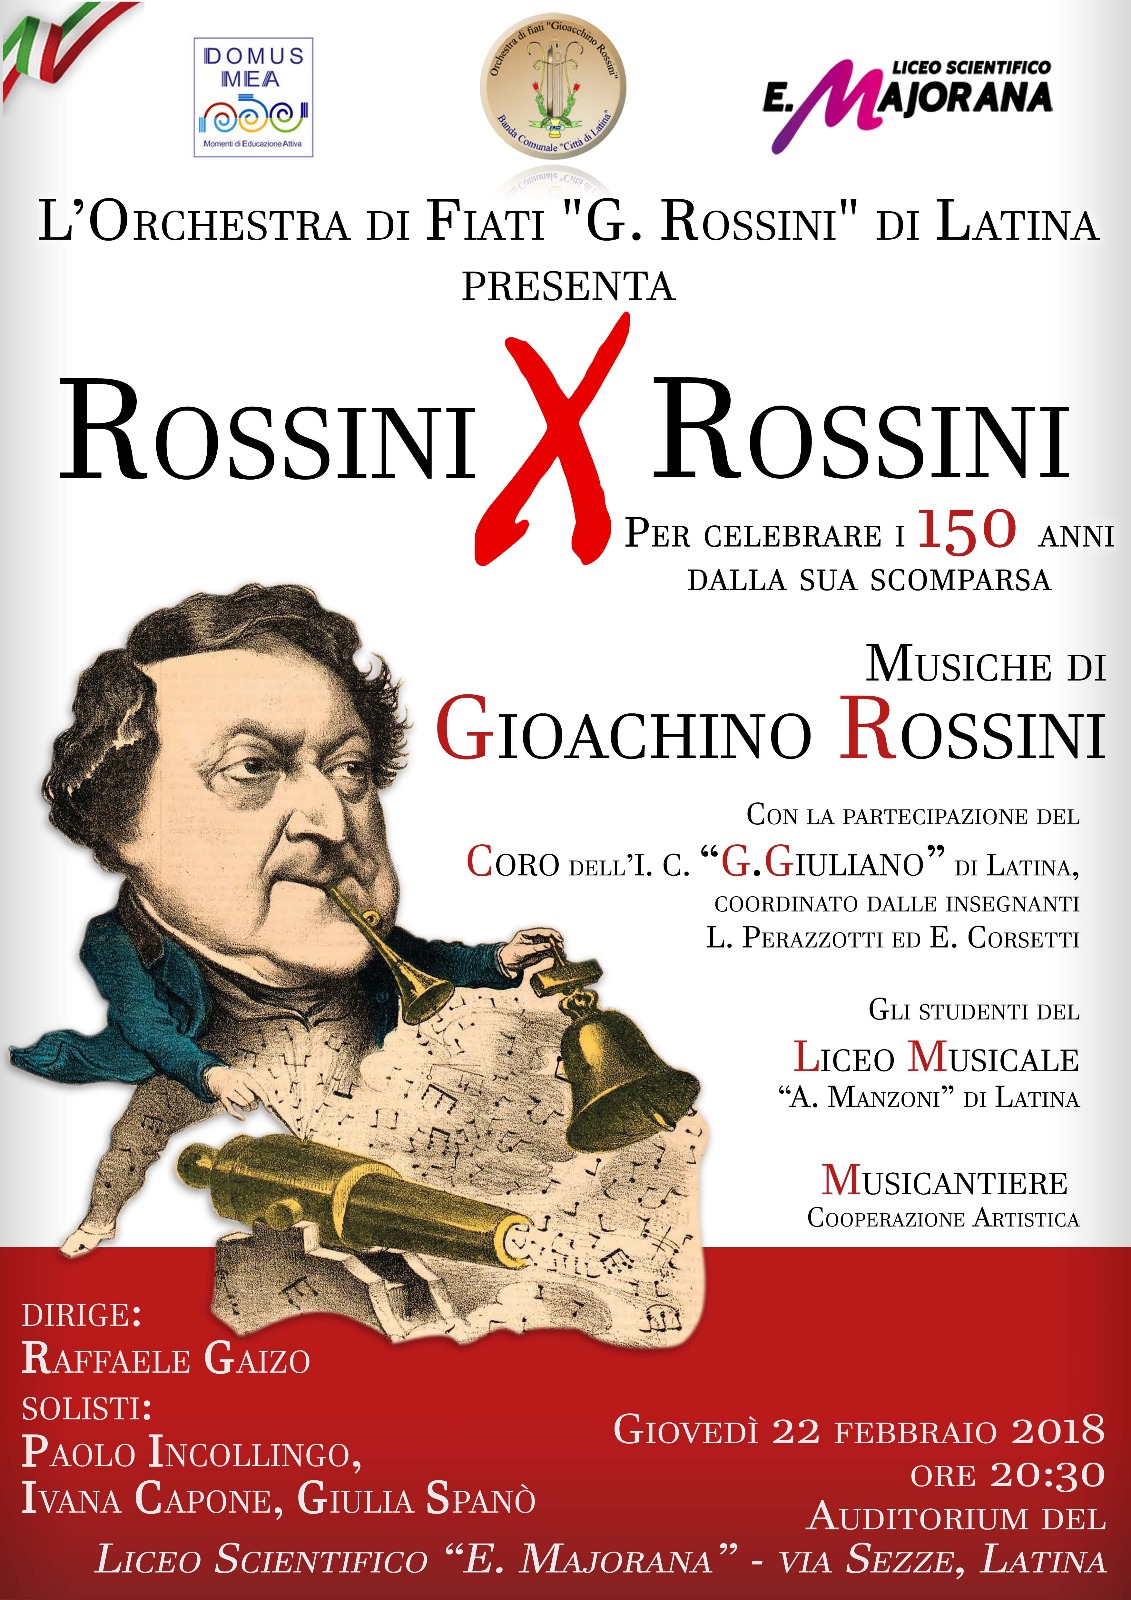 L’orchestra di fiati “G. Rossini” di Latina suona Rossini